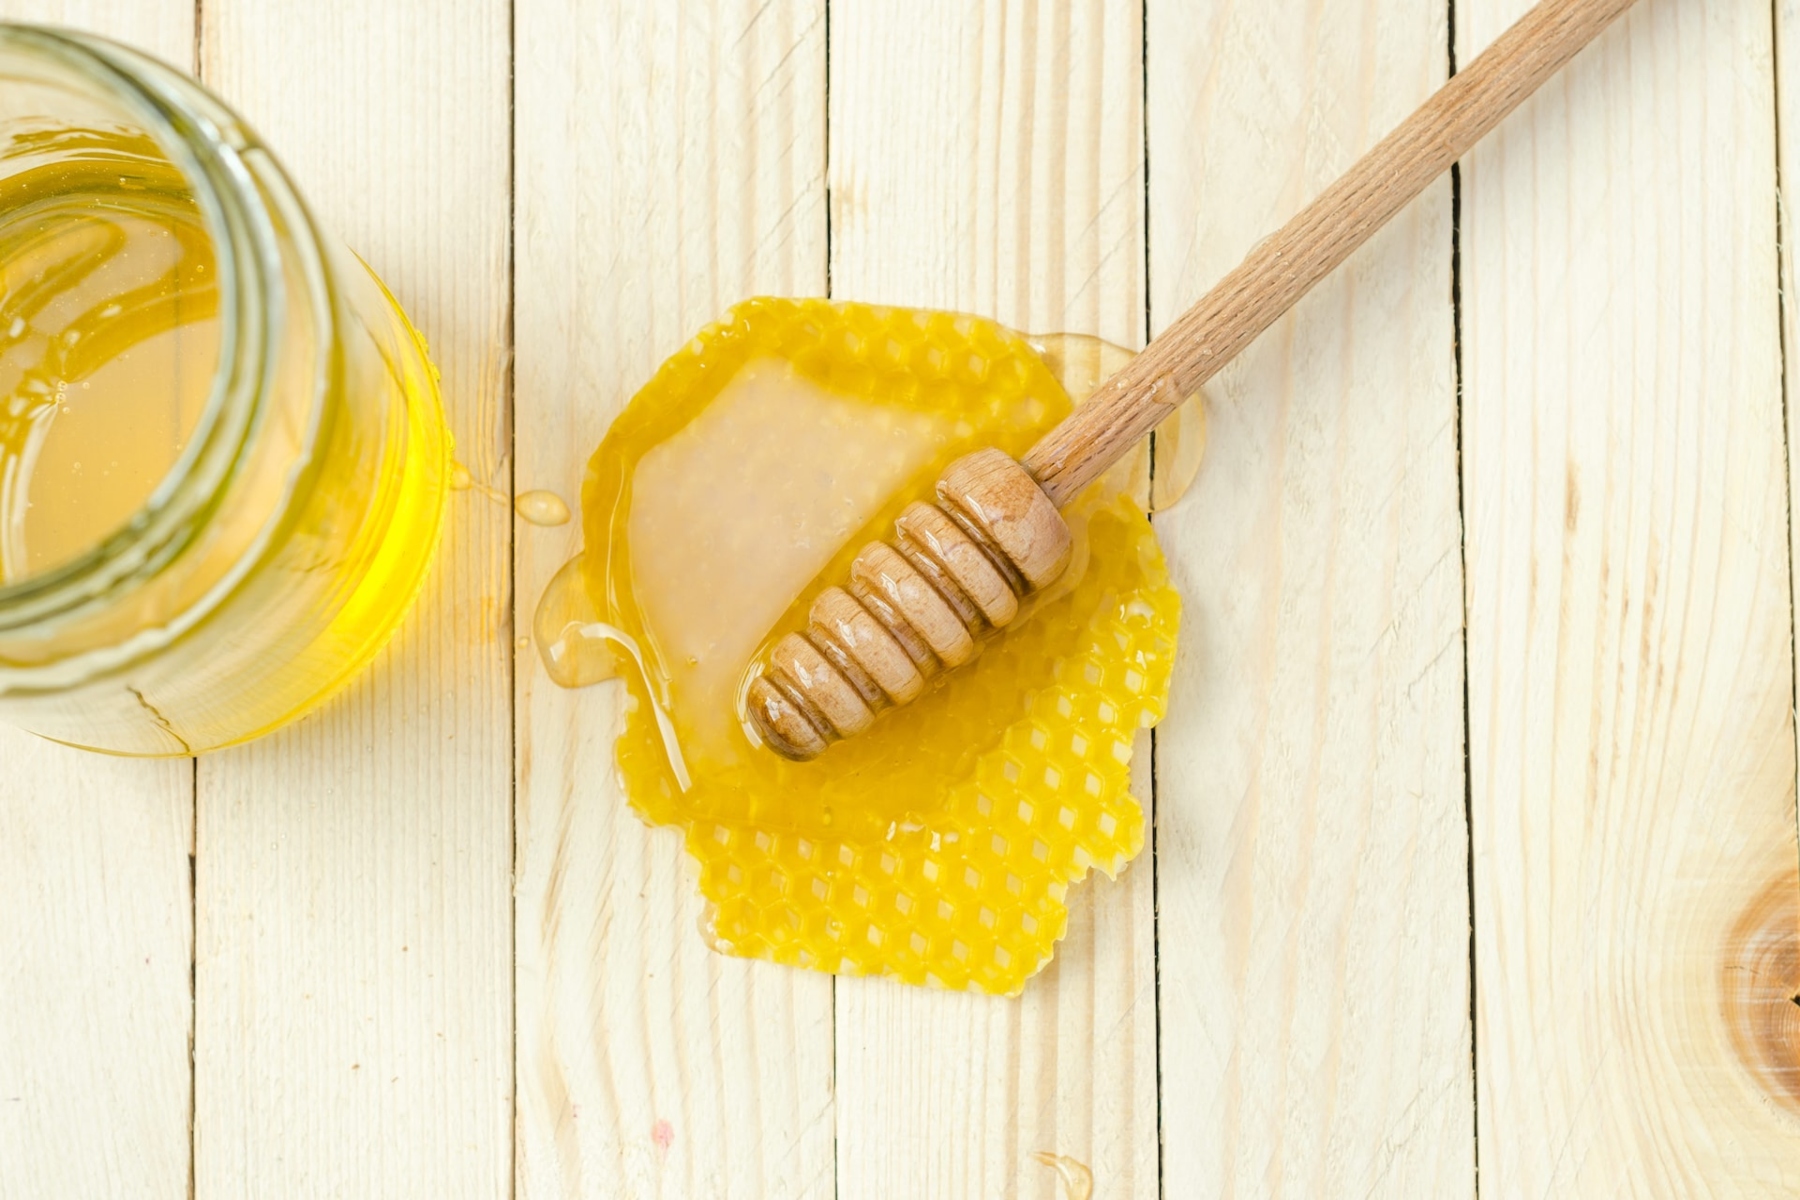 Μέλι: Πώς μπορεί το μέλι να βοηθήσει στην ενυδάτωση του προσώπου μας;